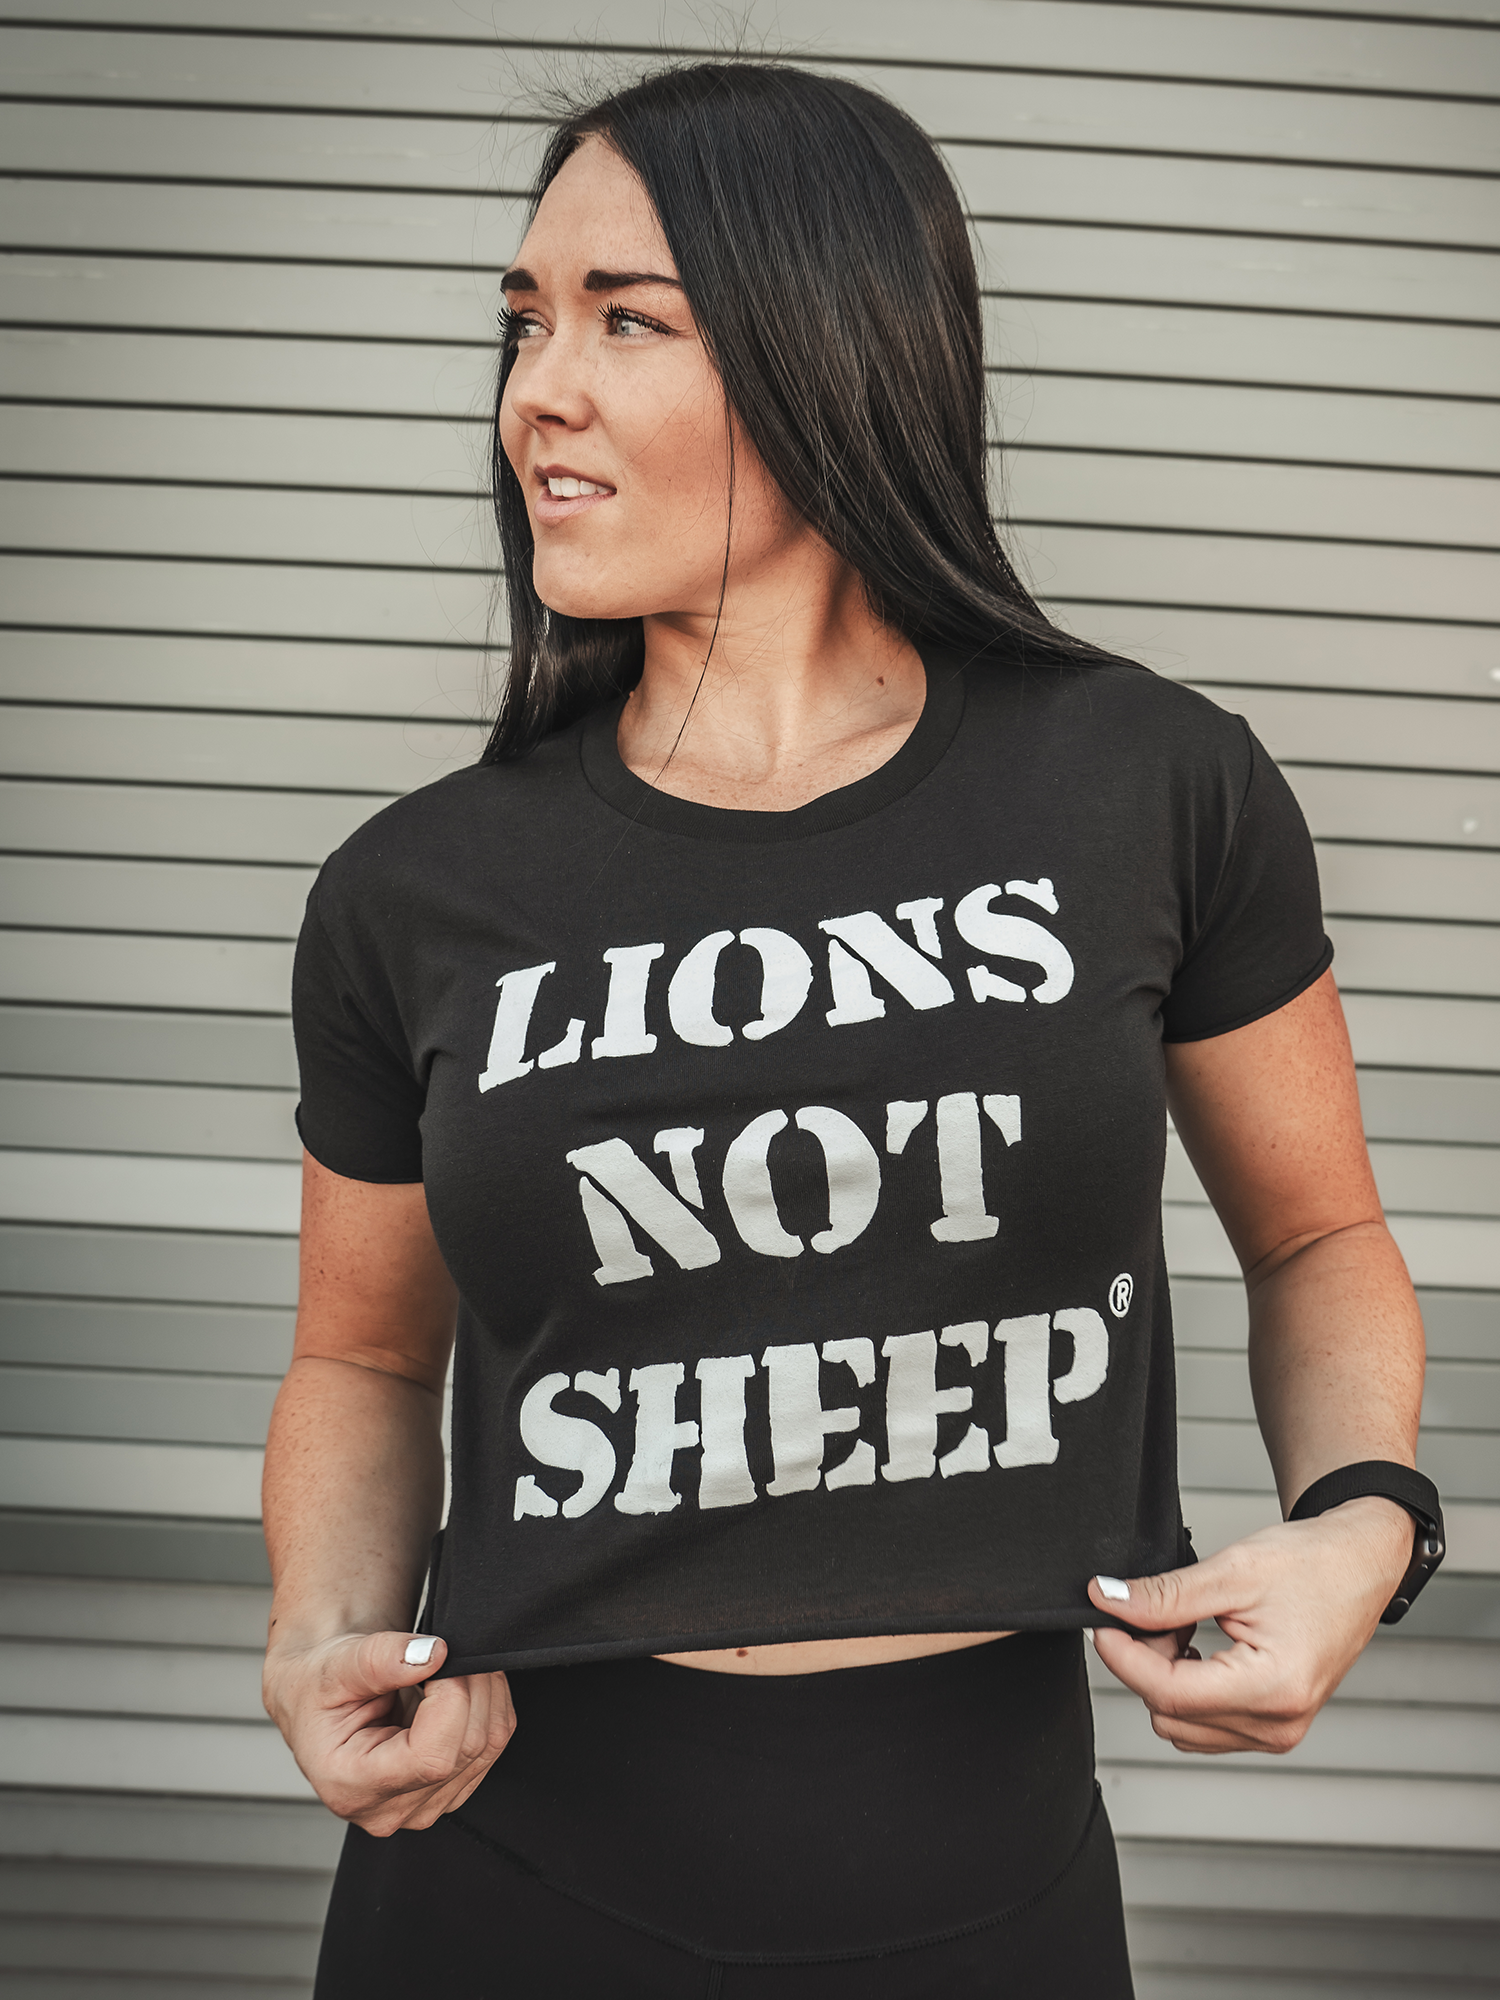 LIONS NOT SHEEP OG Womens Crop Top - Lions Not Sheep ®